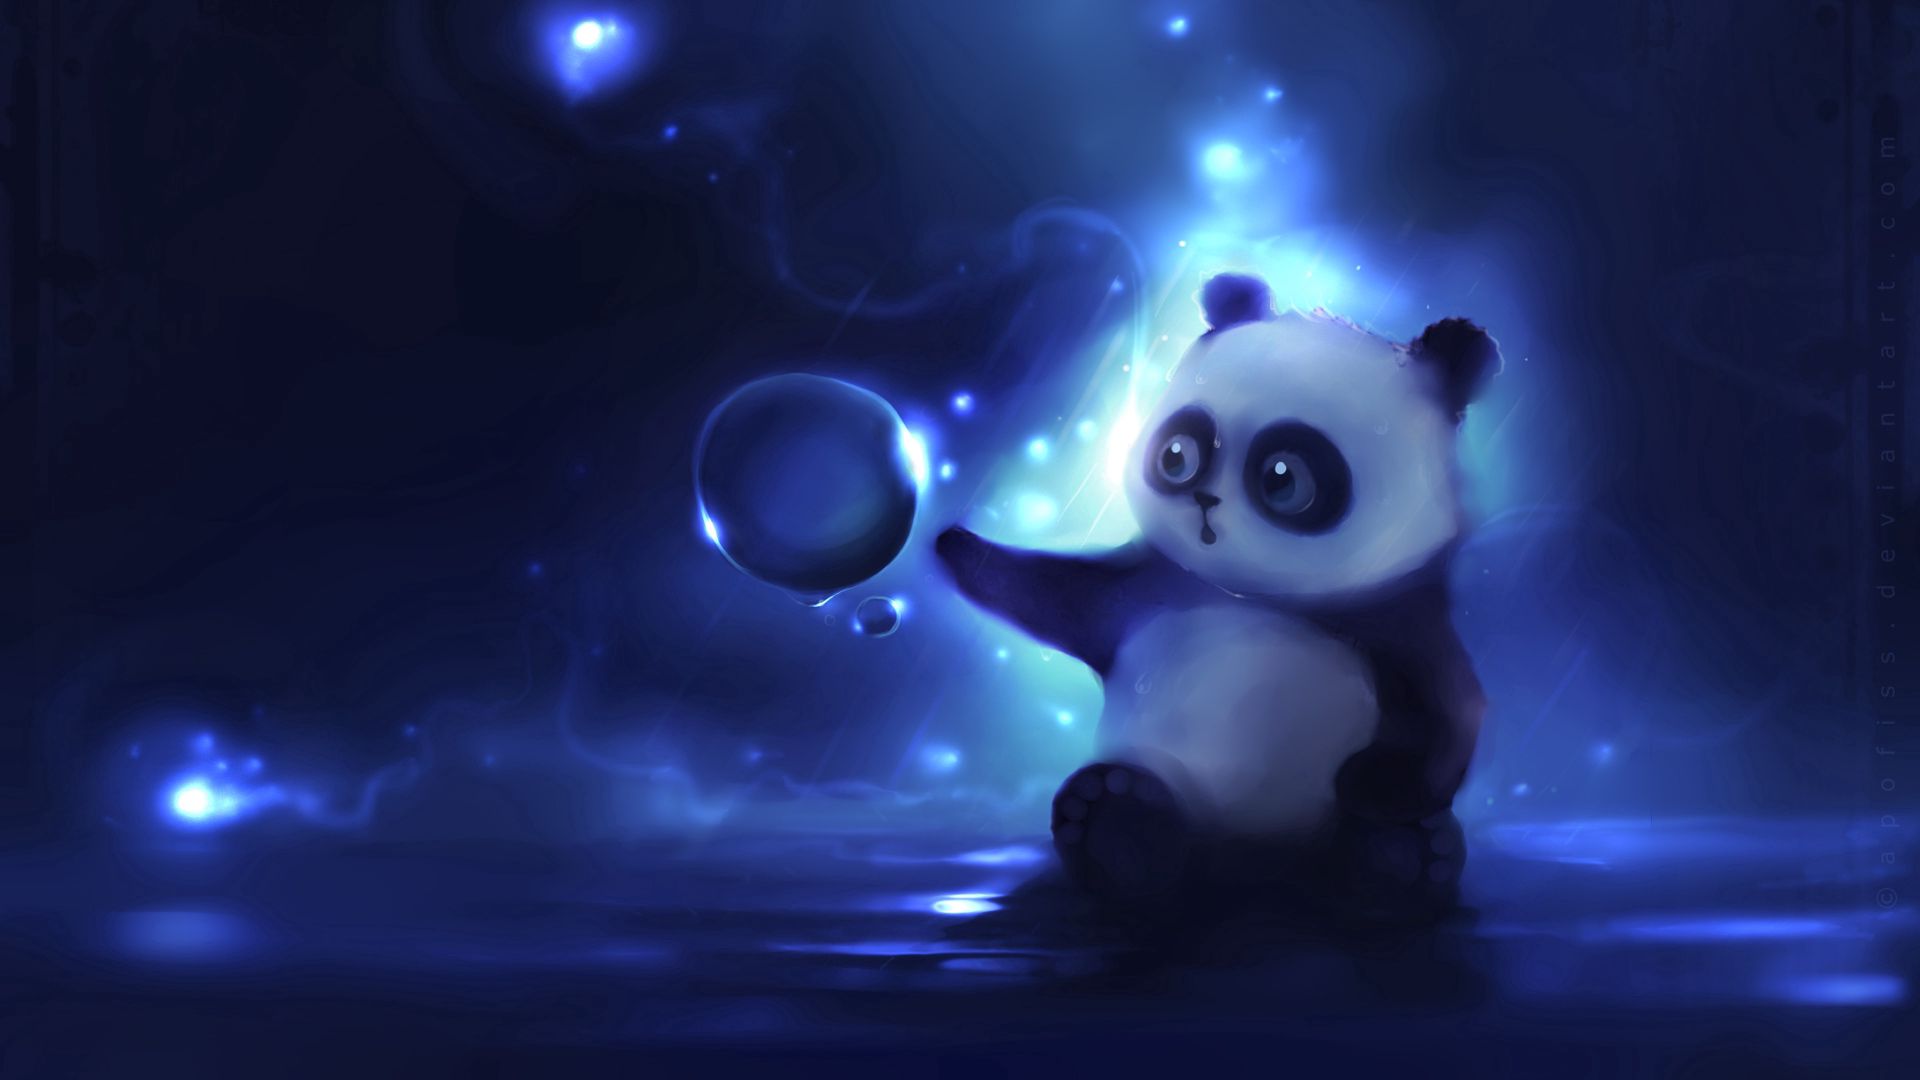 Descargar fondos de escritorio de Panda HD